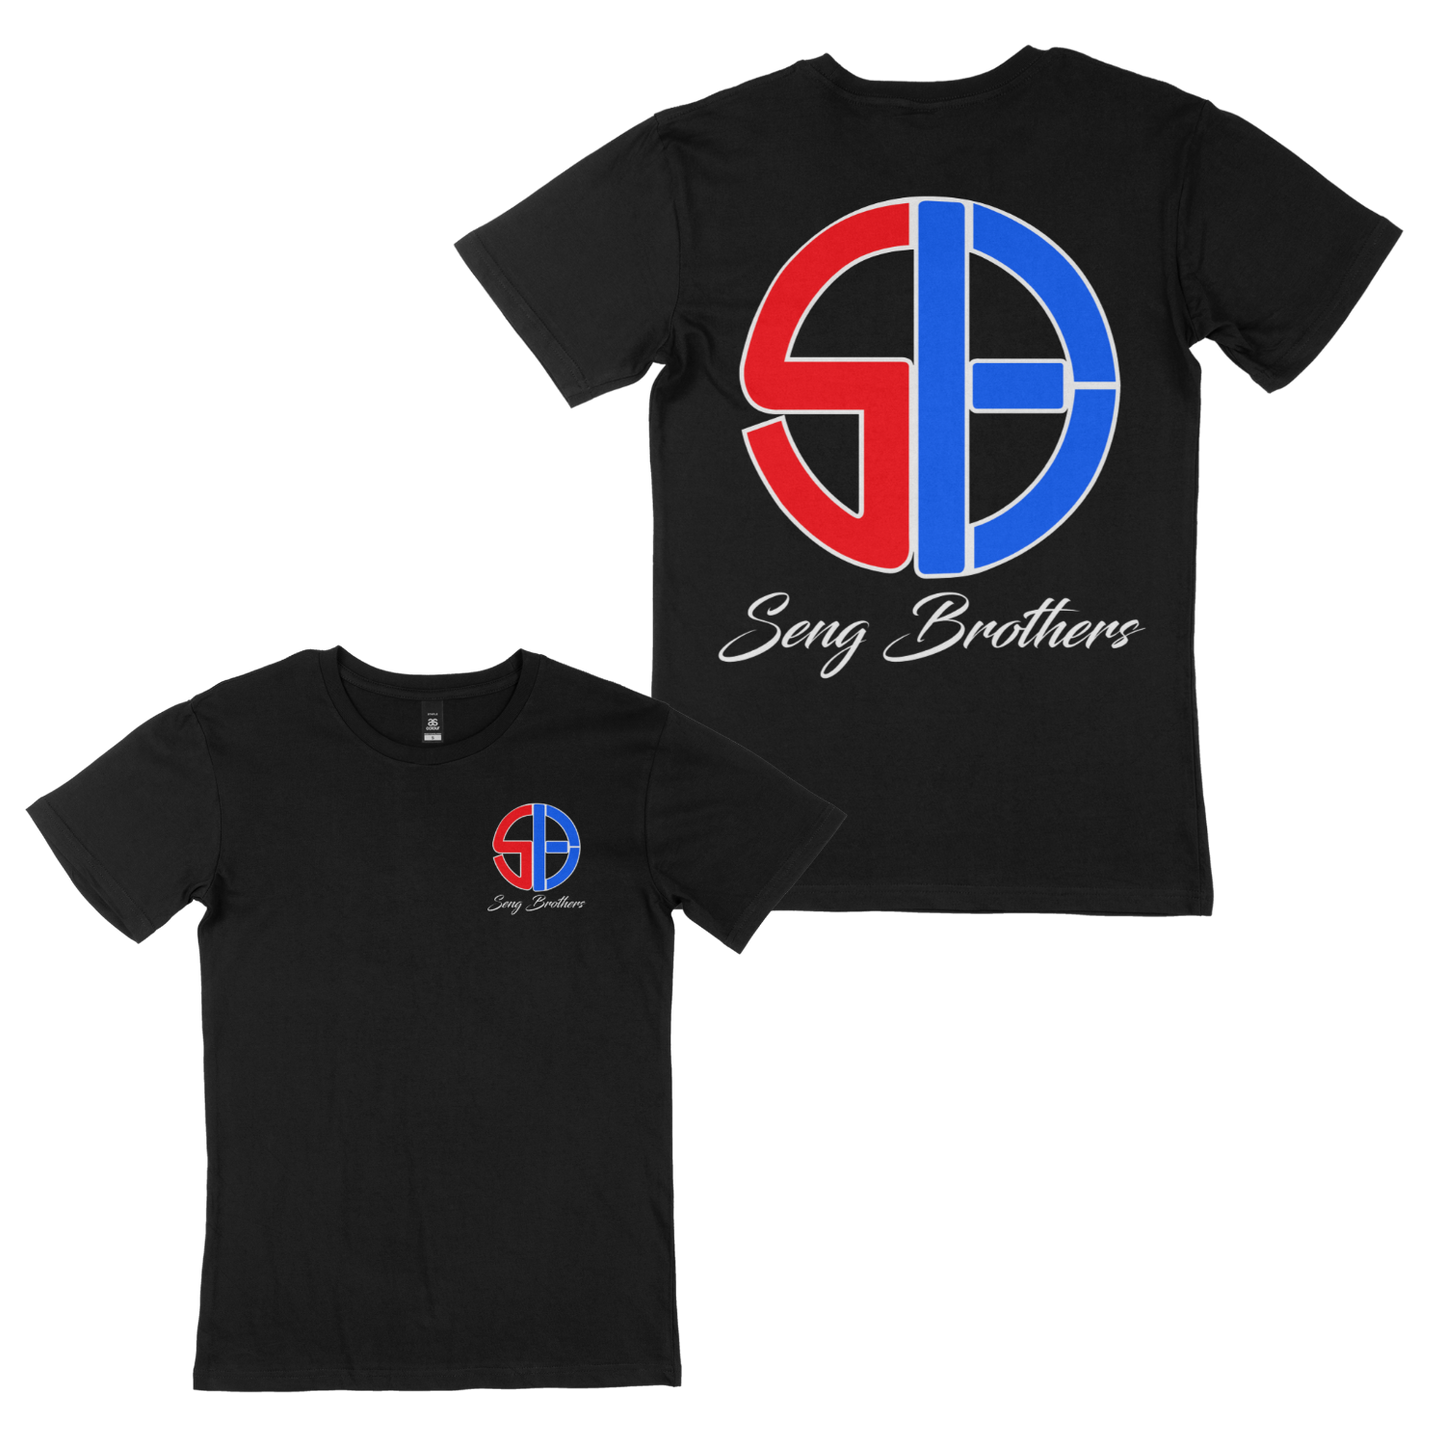 SB Original Design T-Shirt - Red/Blue